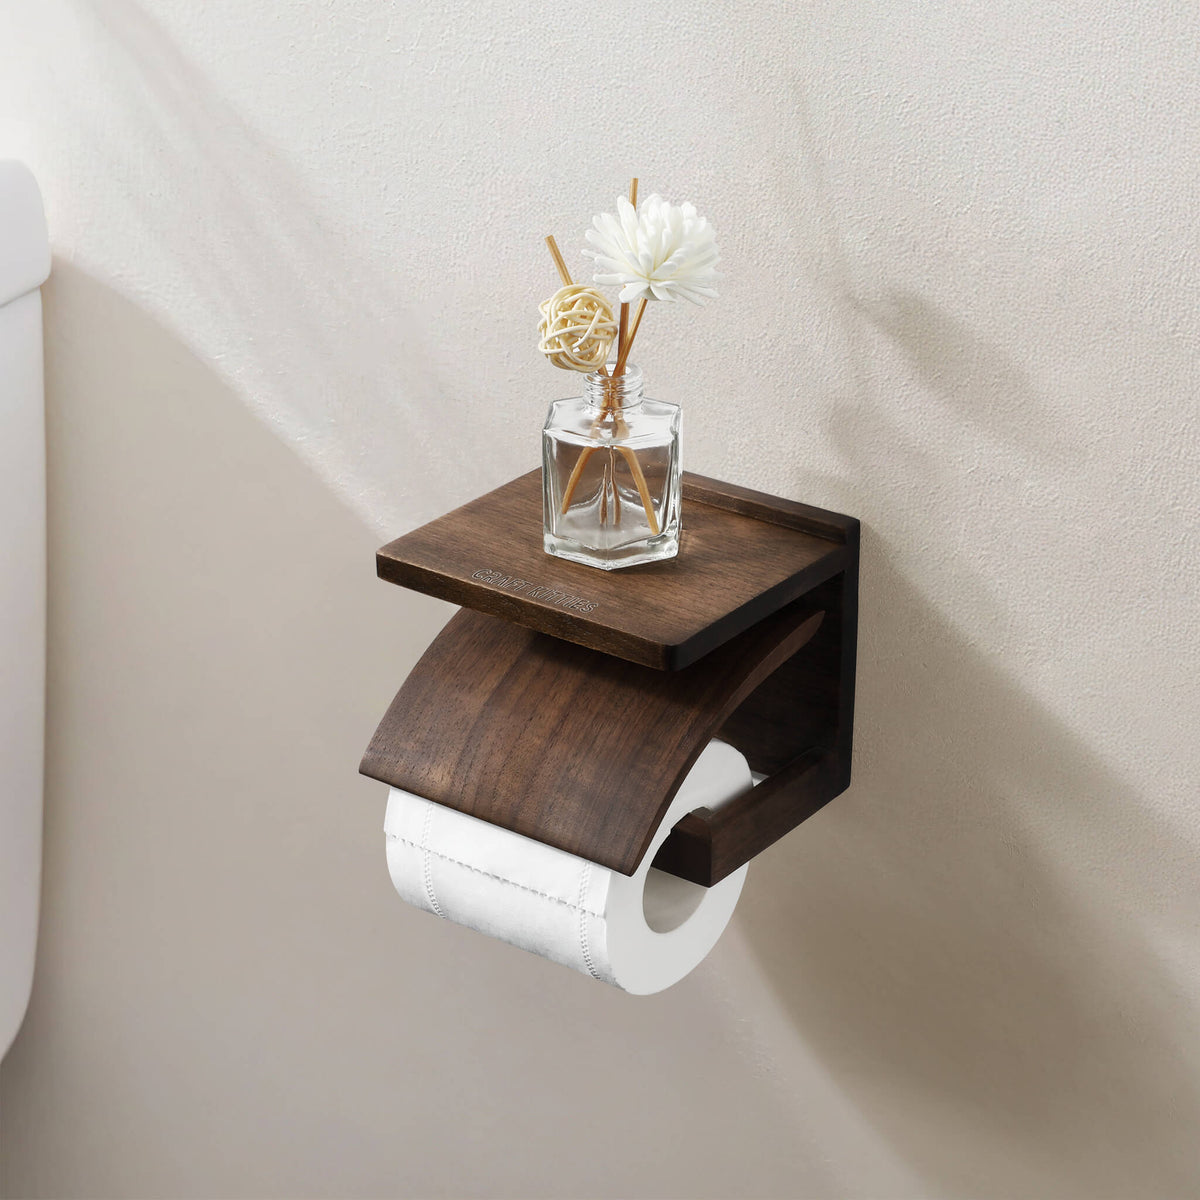 Red Oak Classique Toilet Paper Holder